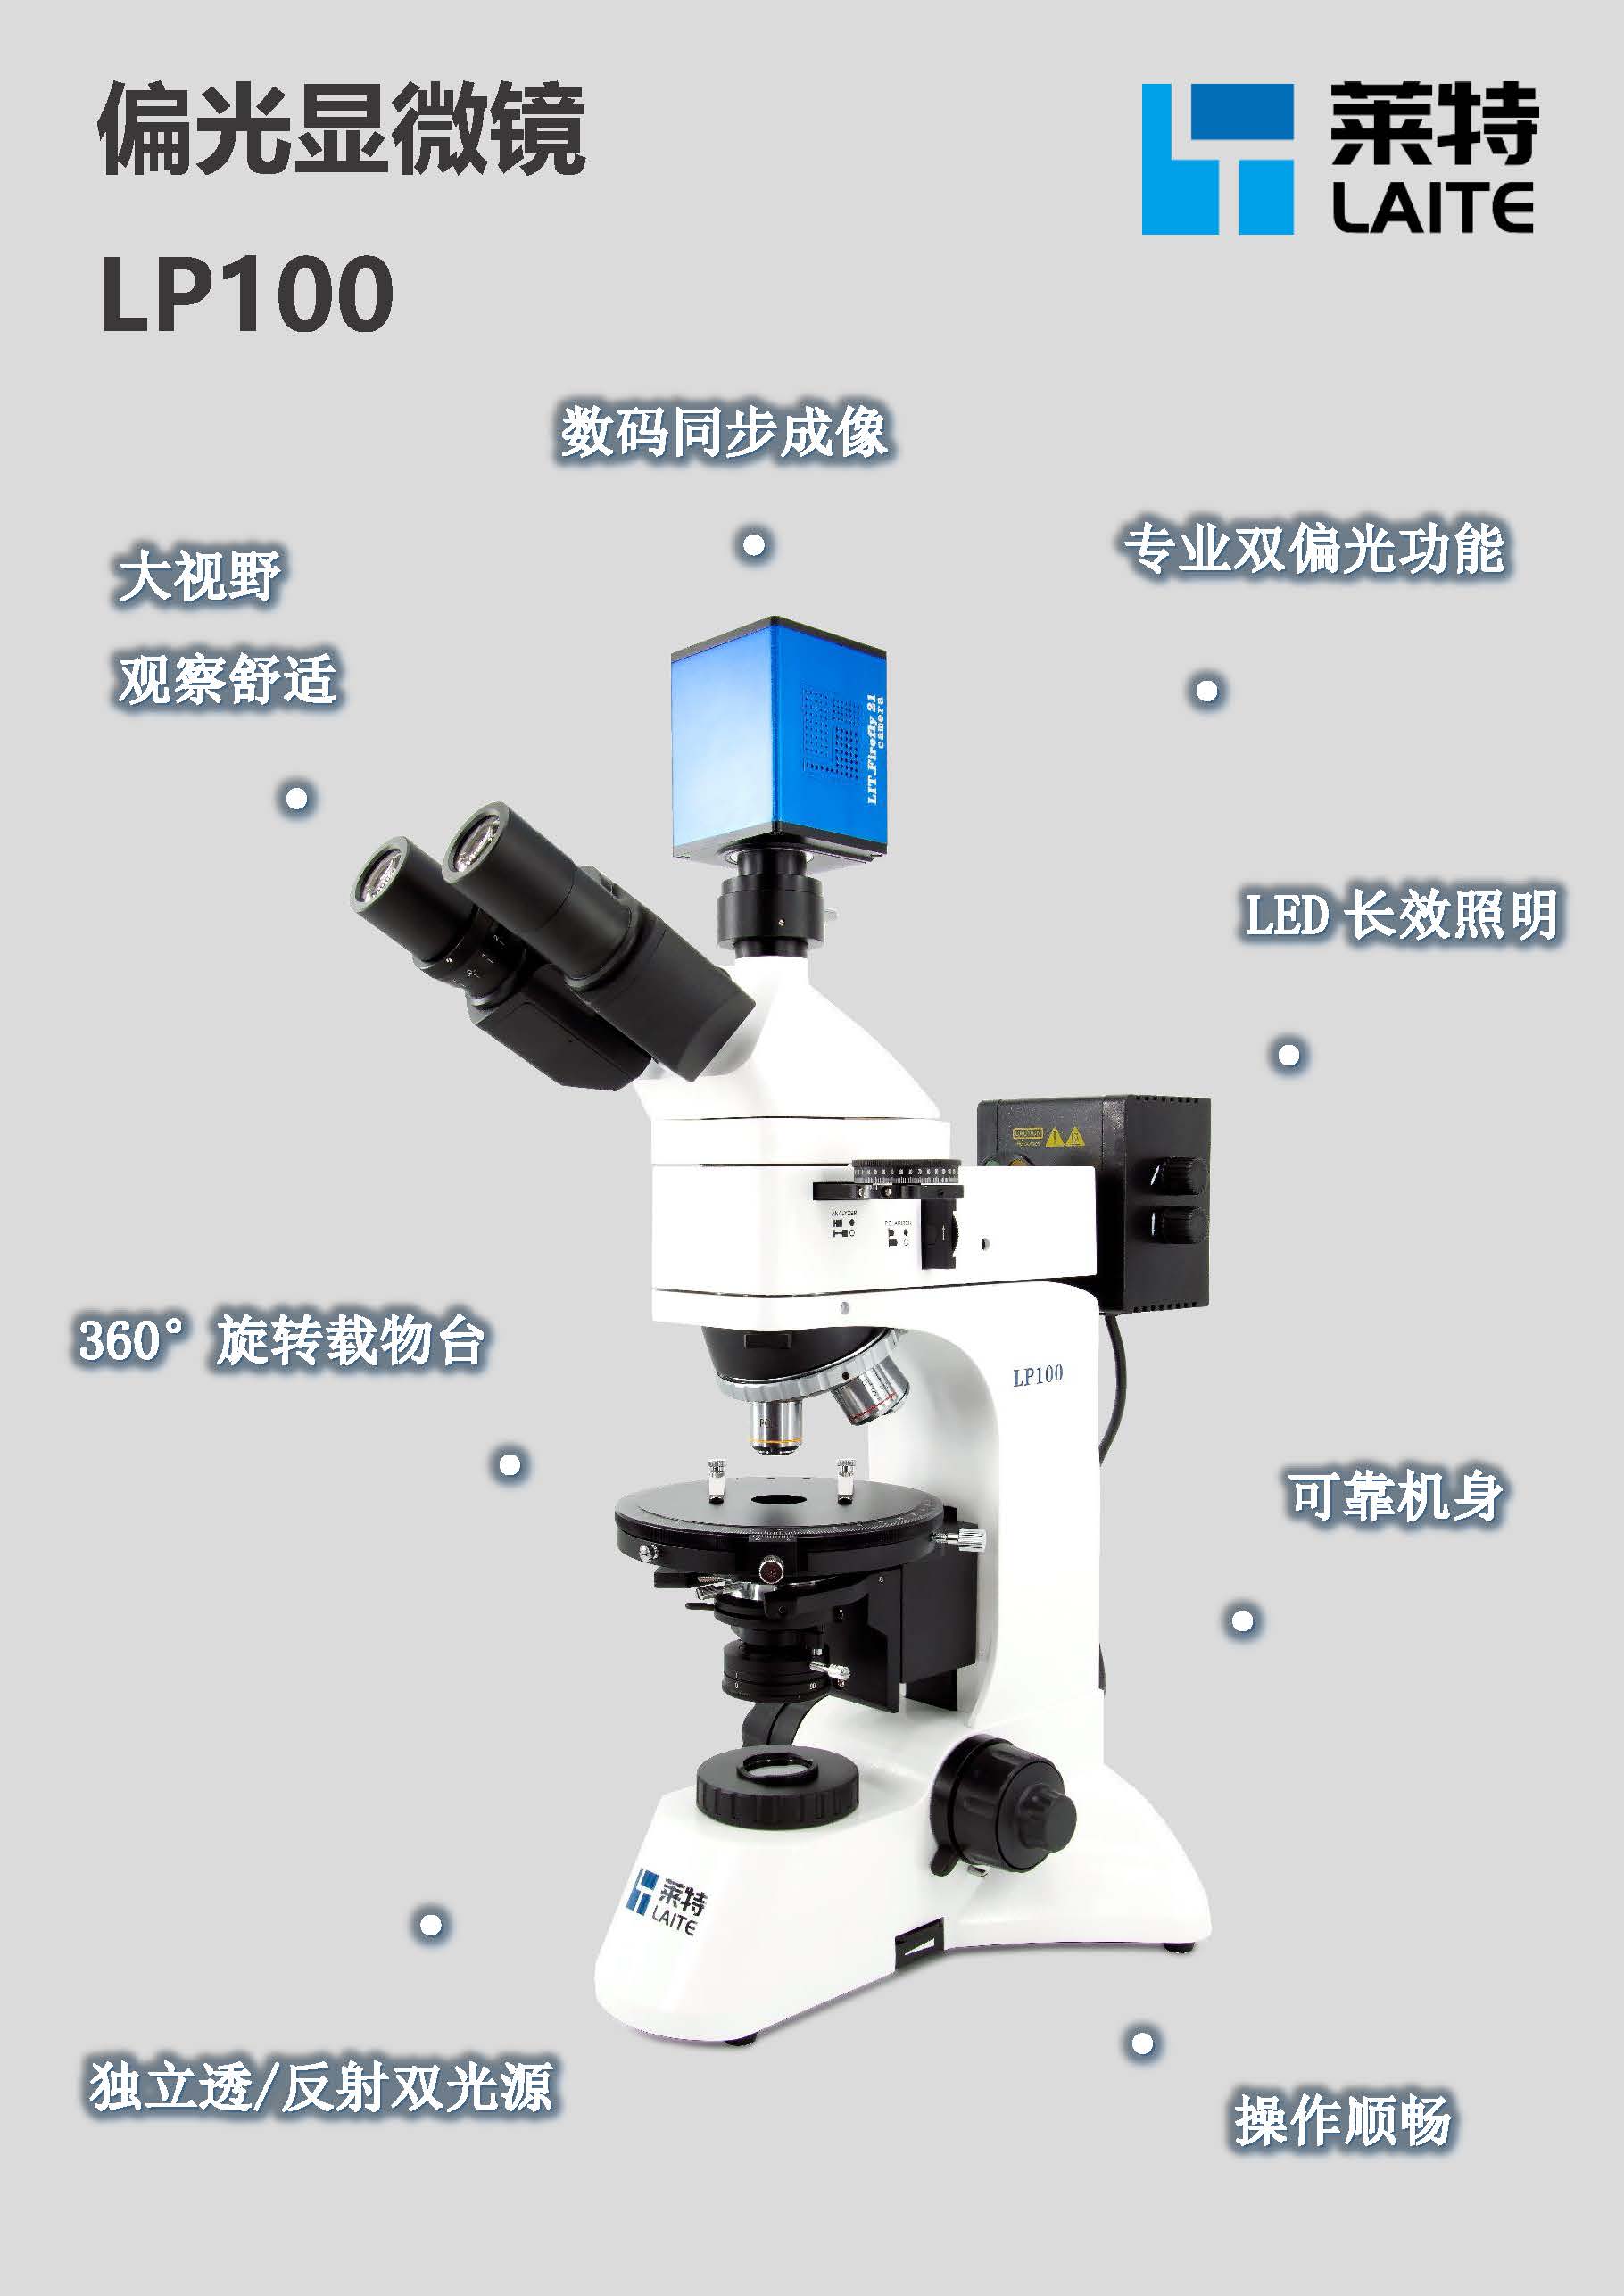 徕卡DM750P偏光显微镜 旋转固定对中圆形载物台 成像清晰_进口显微镜_北京麦特微科技有限公司